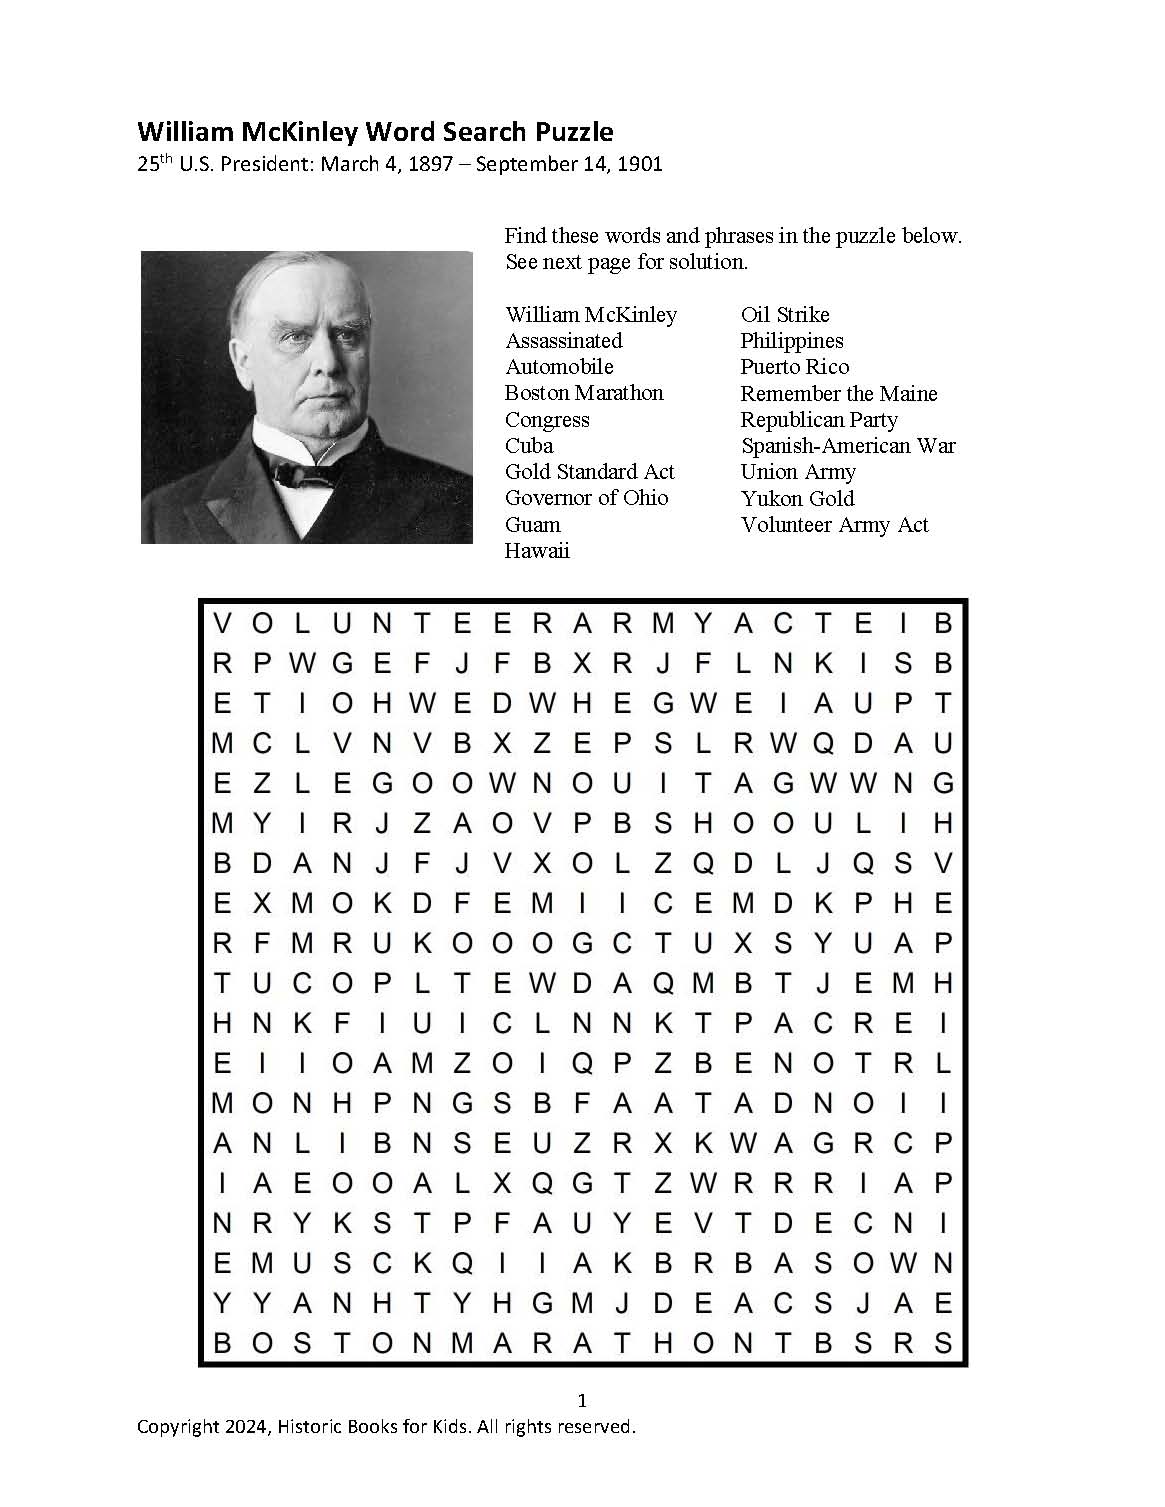 William McKinley word search